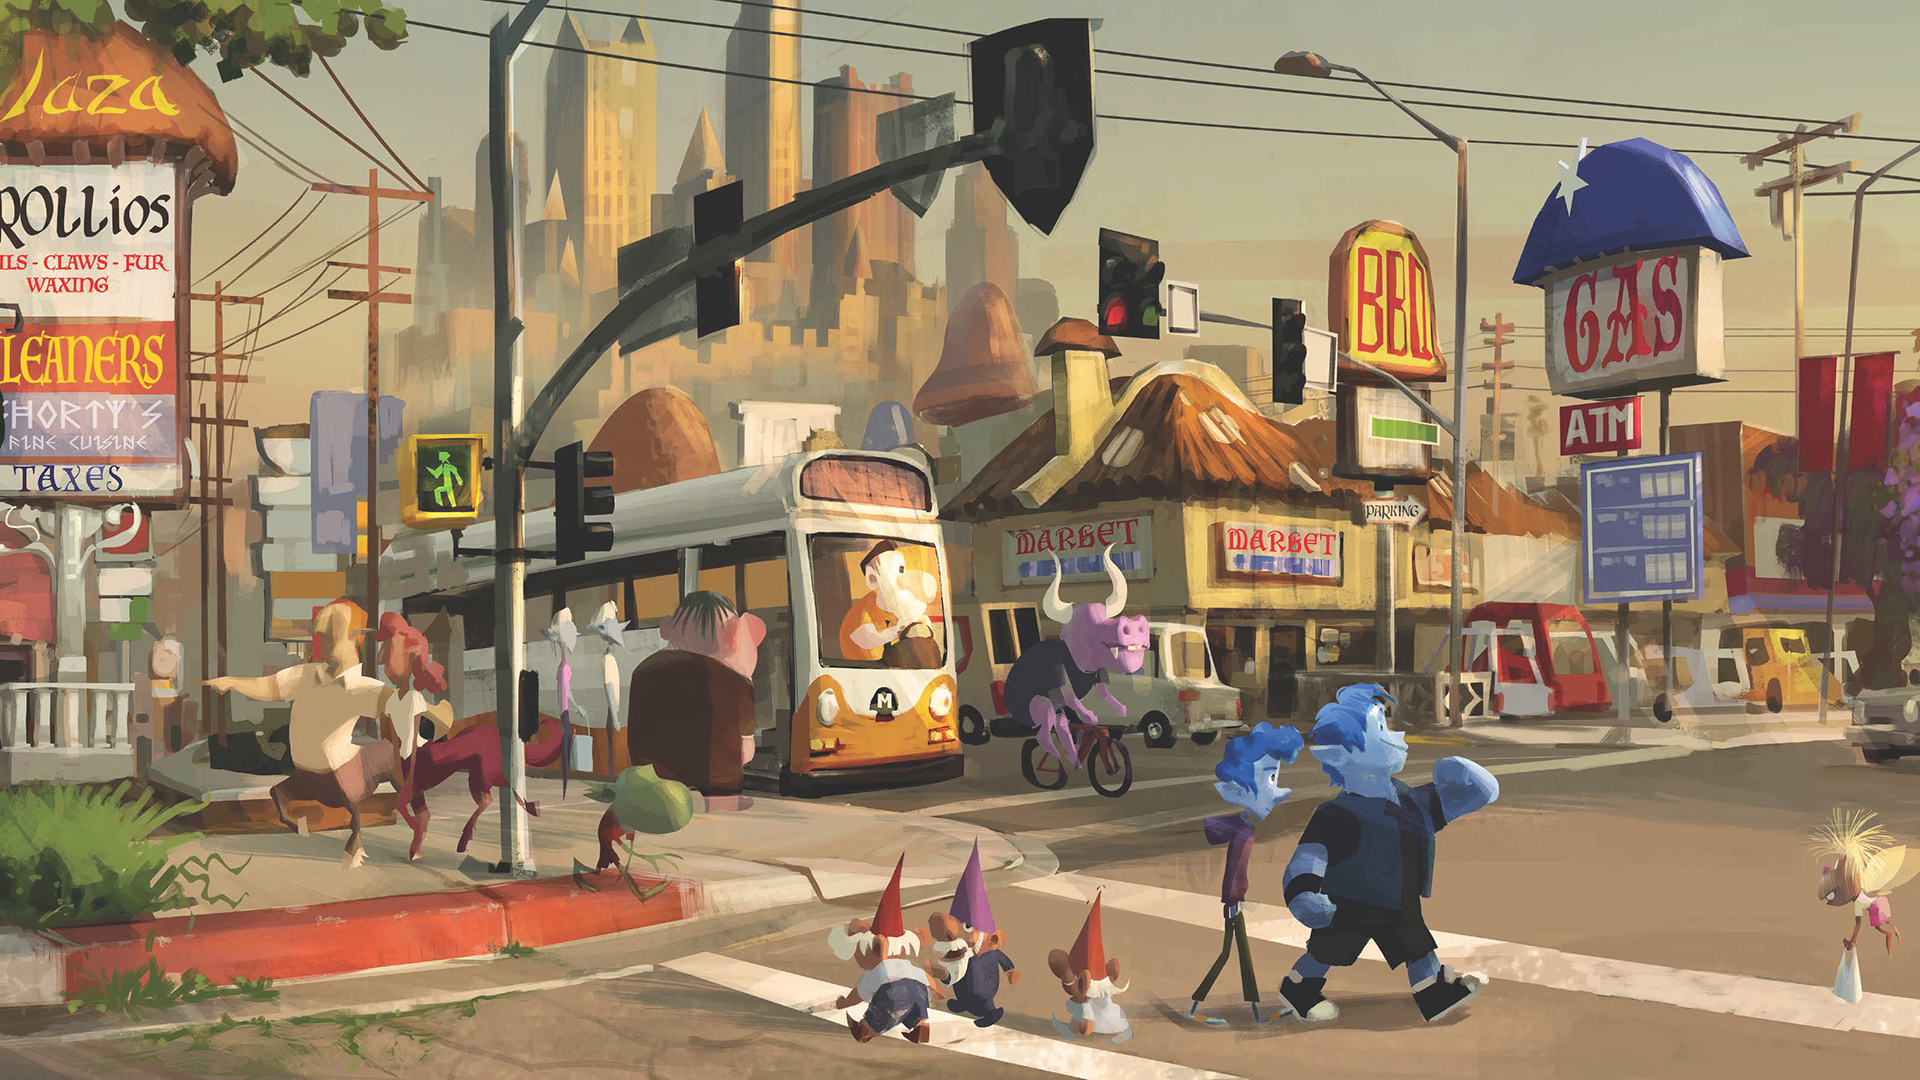 Soul Pixar Wallpapers